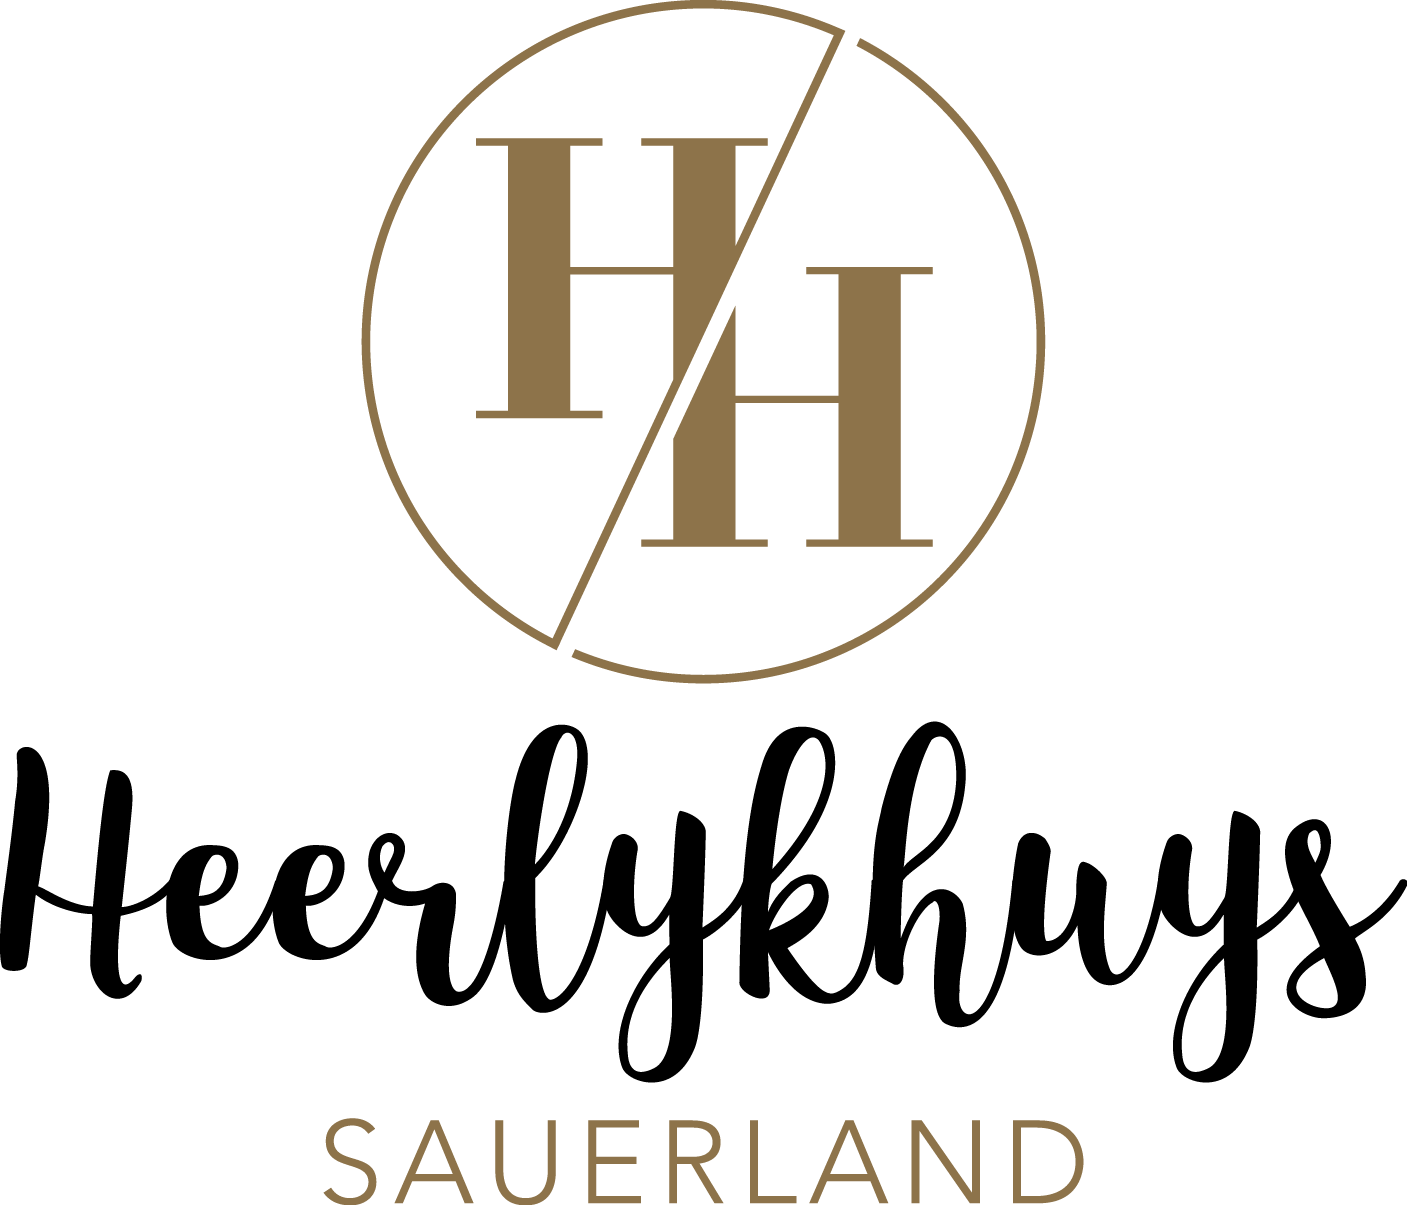 Heerlykhuys Sauerland